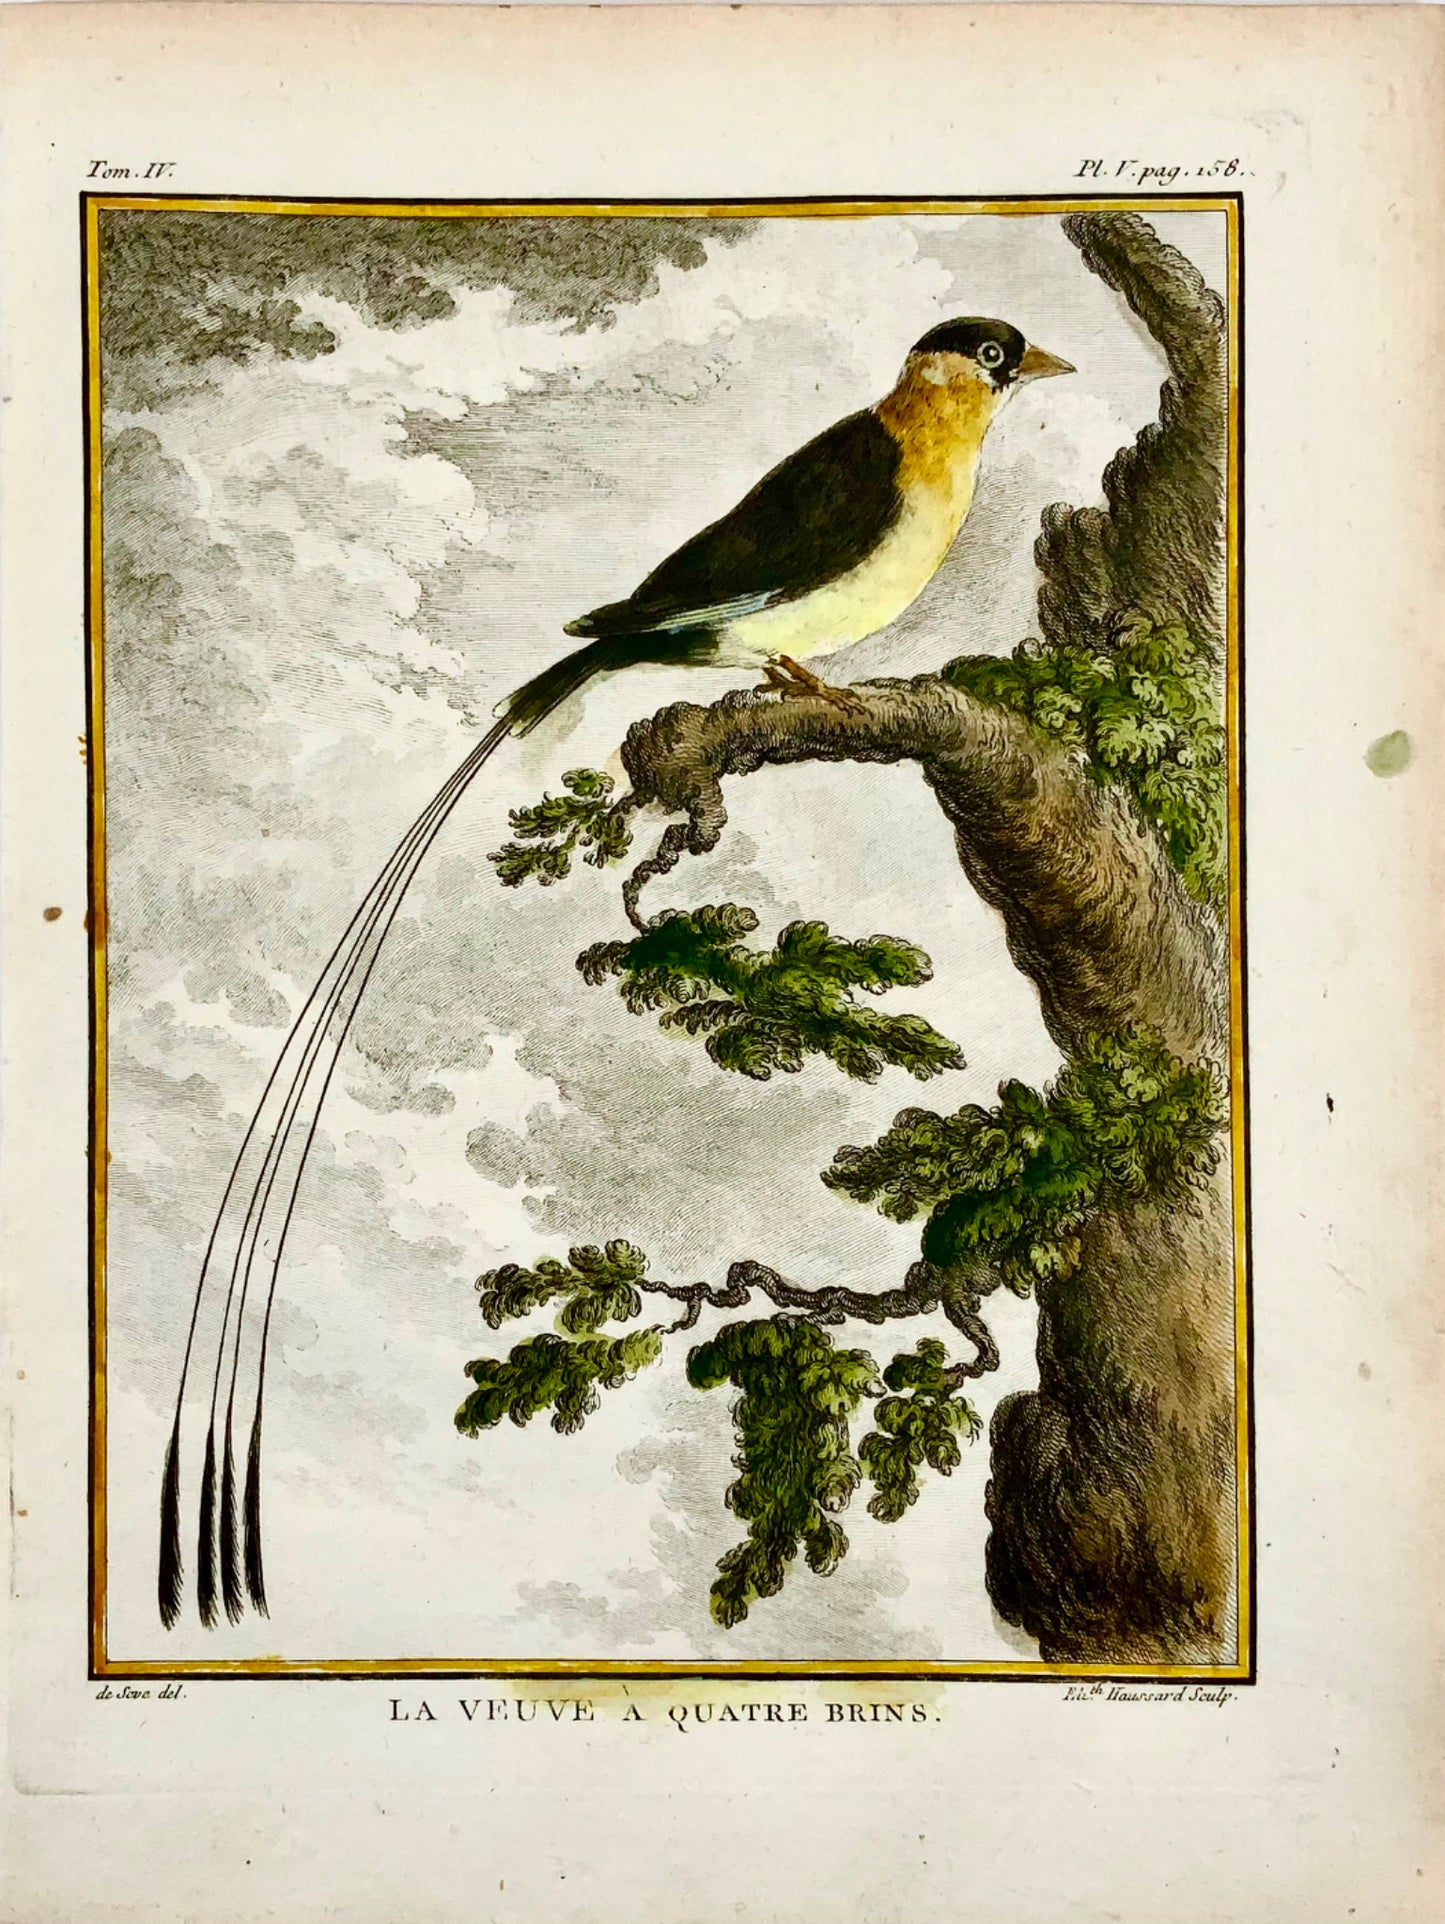 1779 de Seve - Veuve a quatre brins - Ornithology - 4to Large Edn engraving